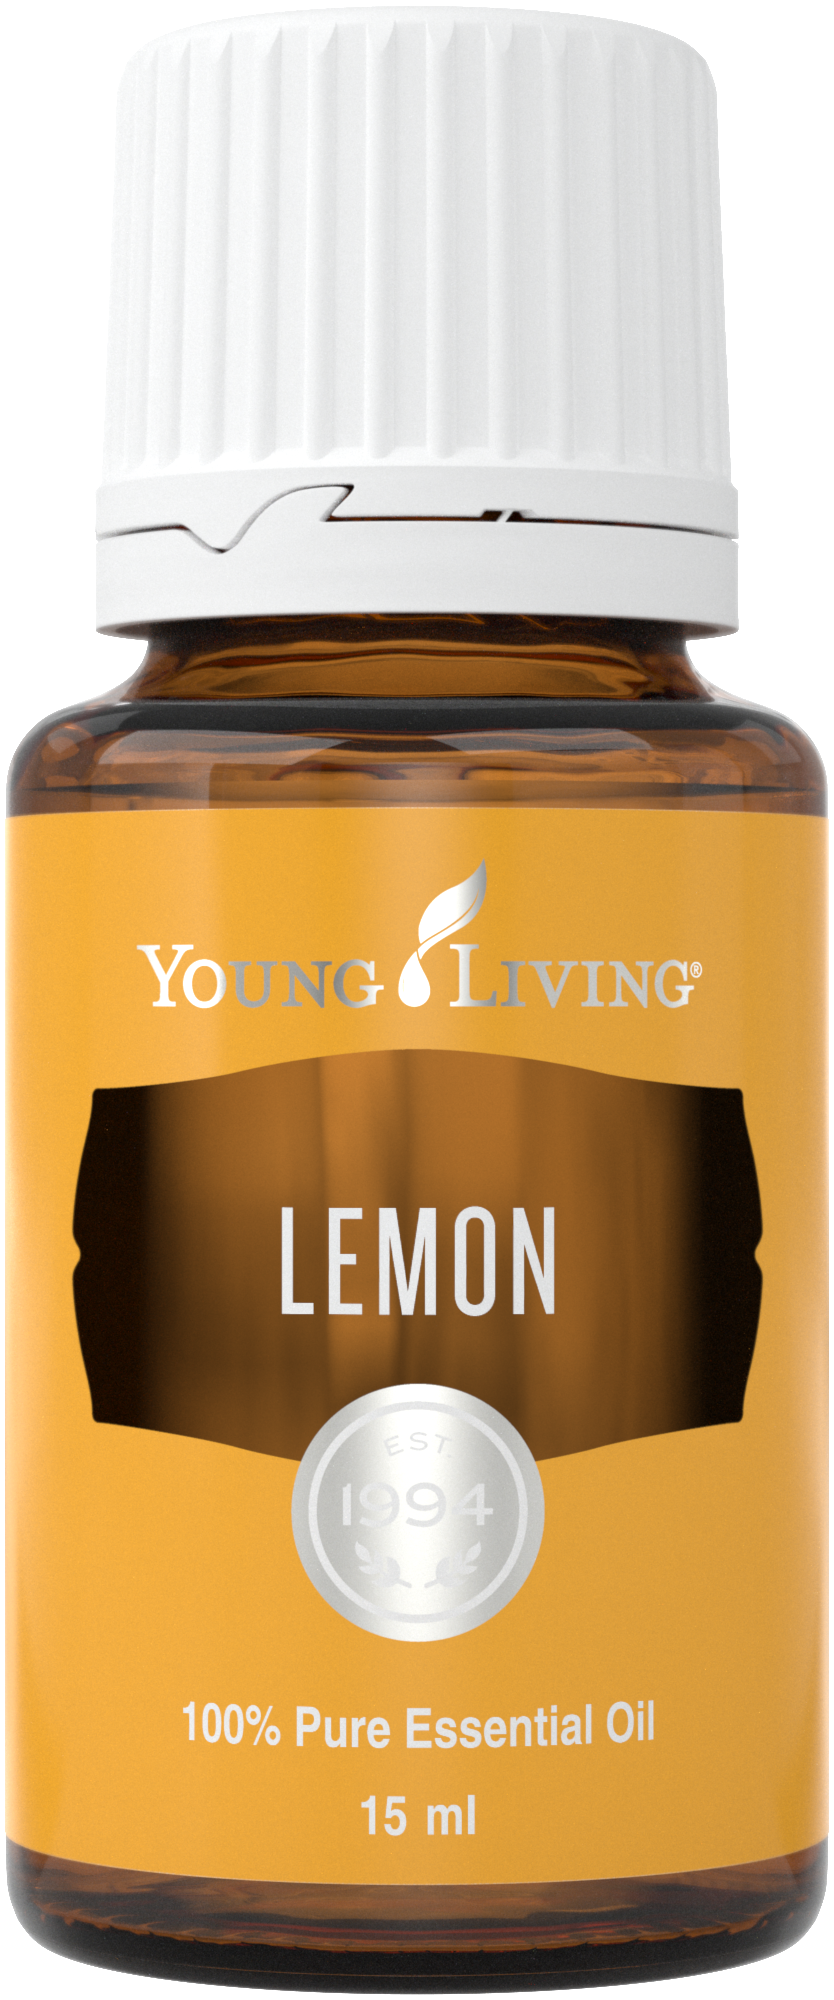 Lemon Essental, Oil Young Living (Foto: Divulgação)